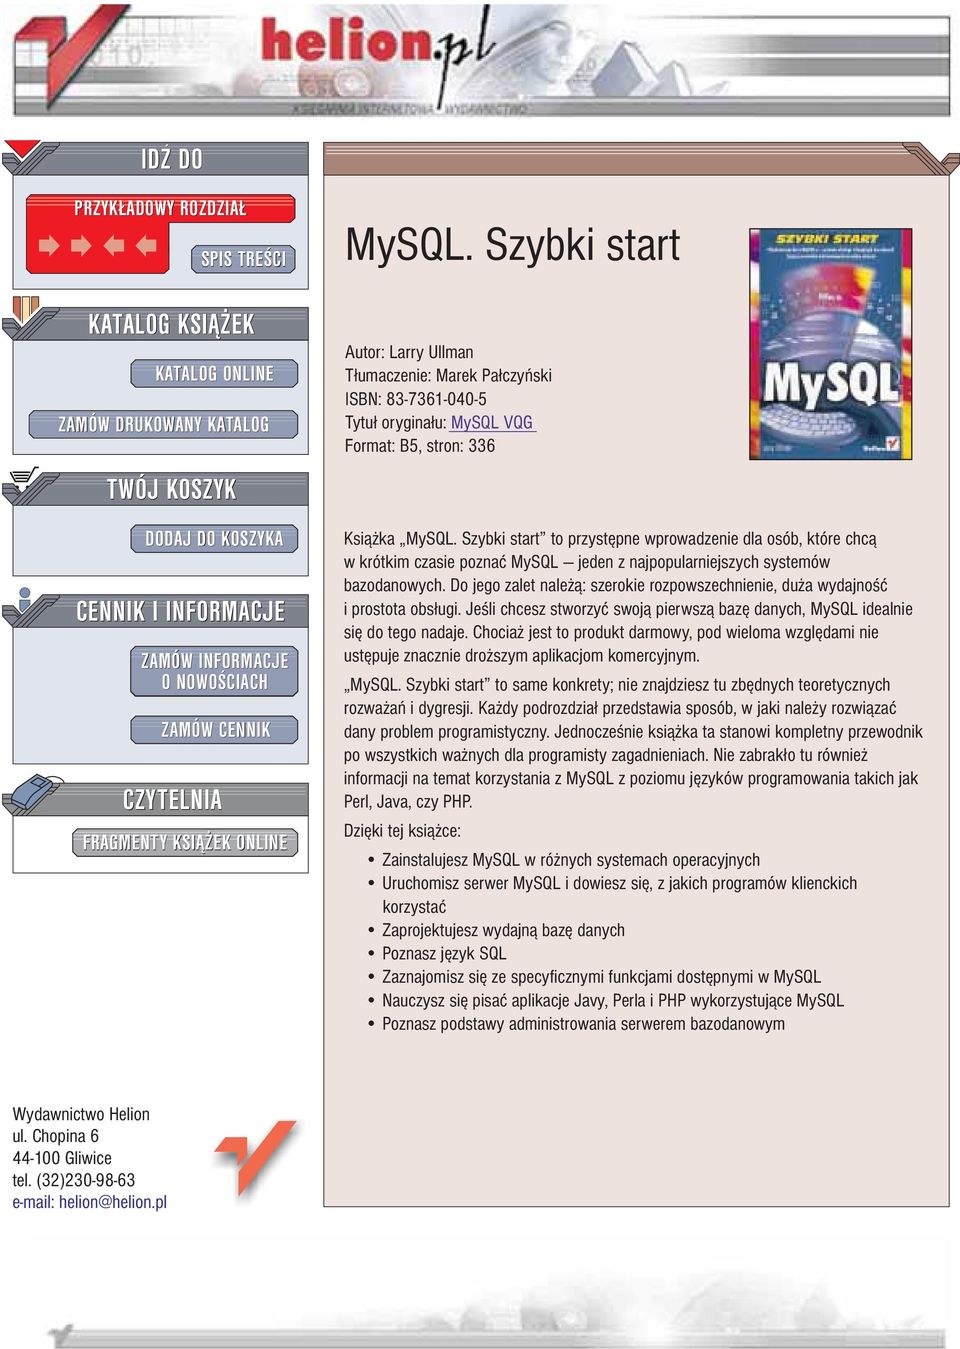 Szybki start to przystêpne wprowadzenie dla osób, które chc¹ w krótkim czasie poznaæ MySQL jeden z najpopularniejszych systemów bazodanowych.